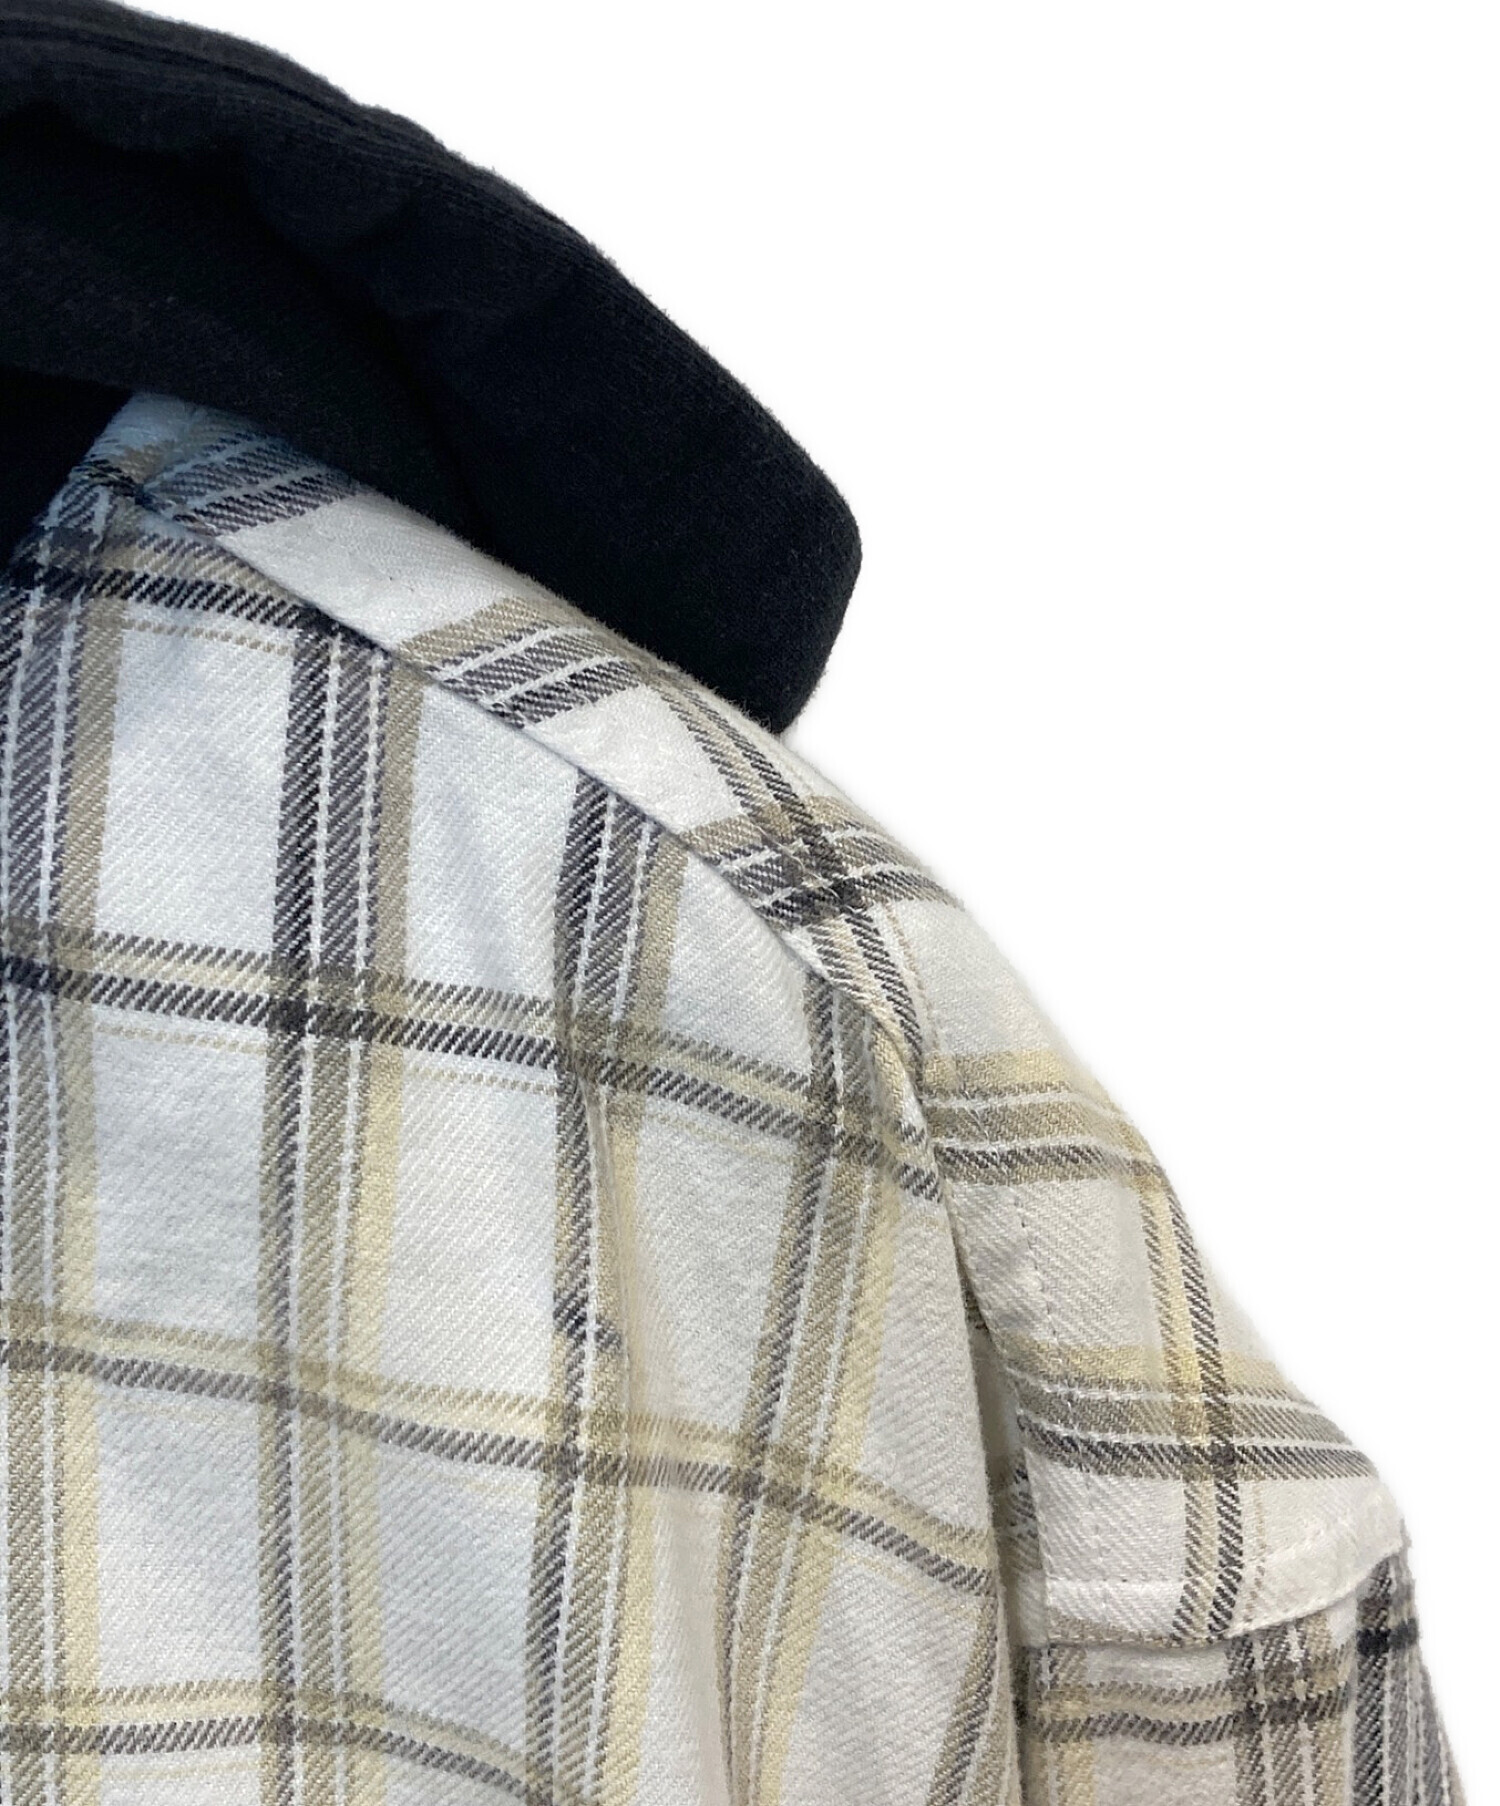 SUPREME (シュプリーム) Dickies (ディッキーズ) Plaid Hooded Zip Up Shirt /  プレイドフードジップアップシャツ ホワイト×ブラック サイズ:XL